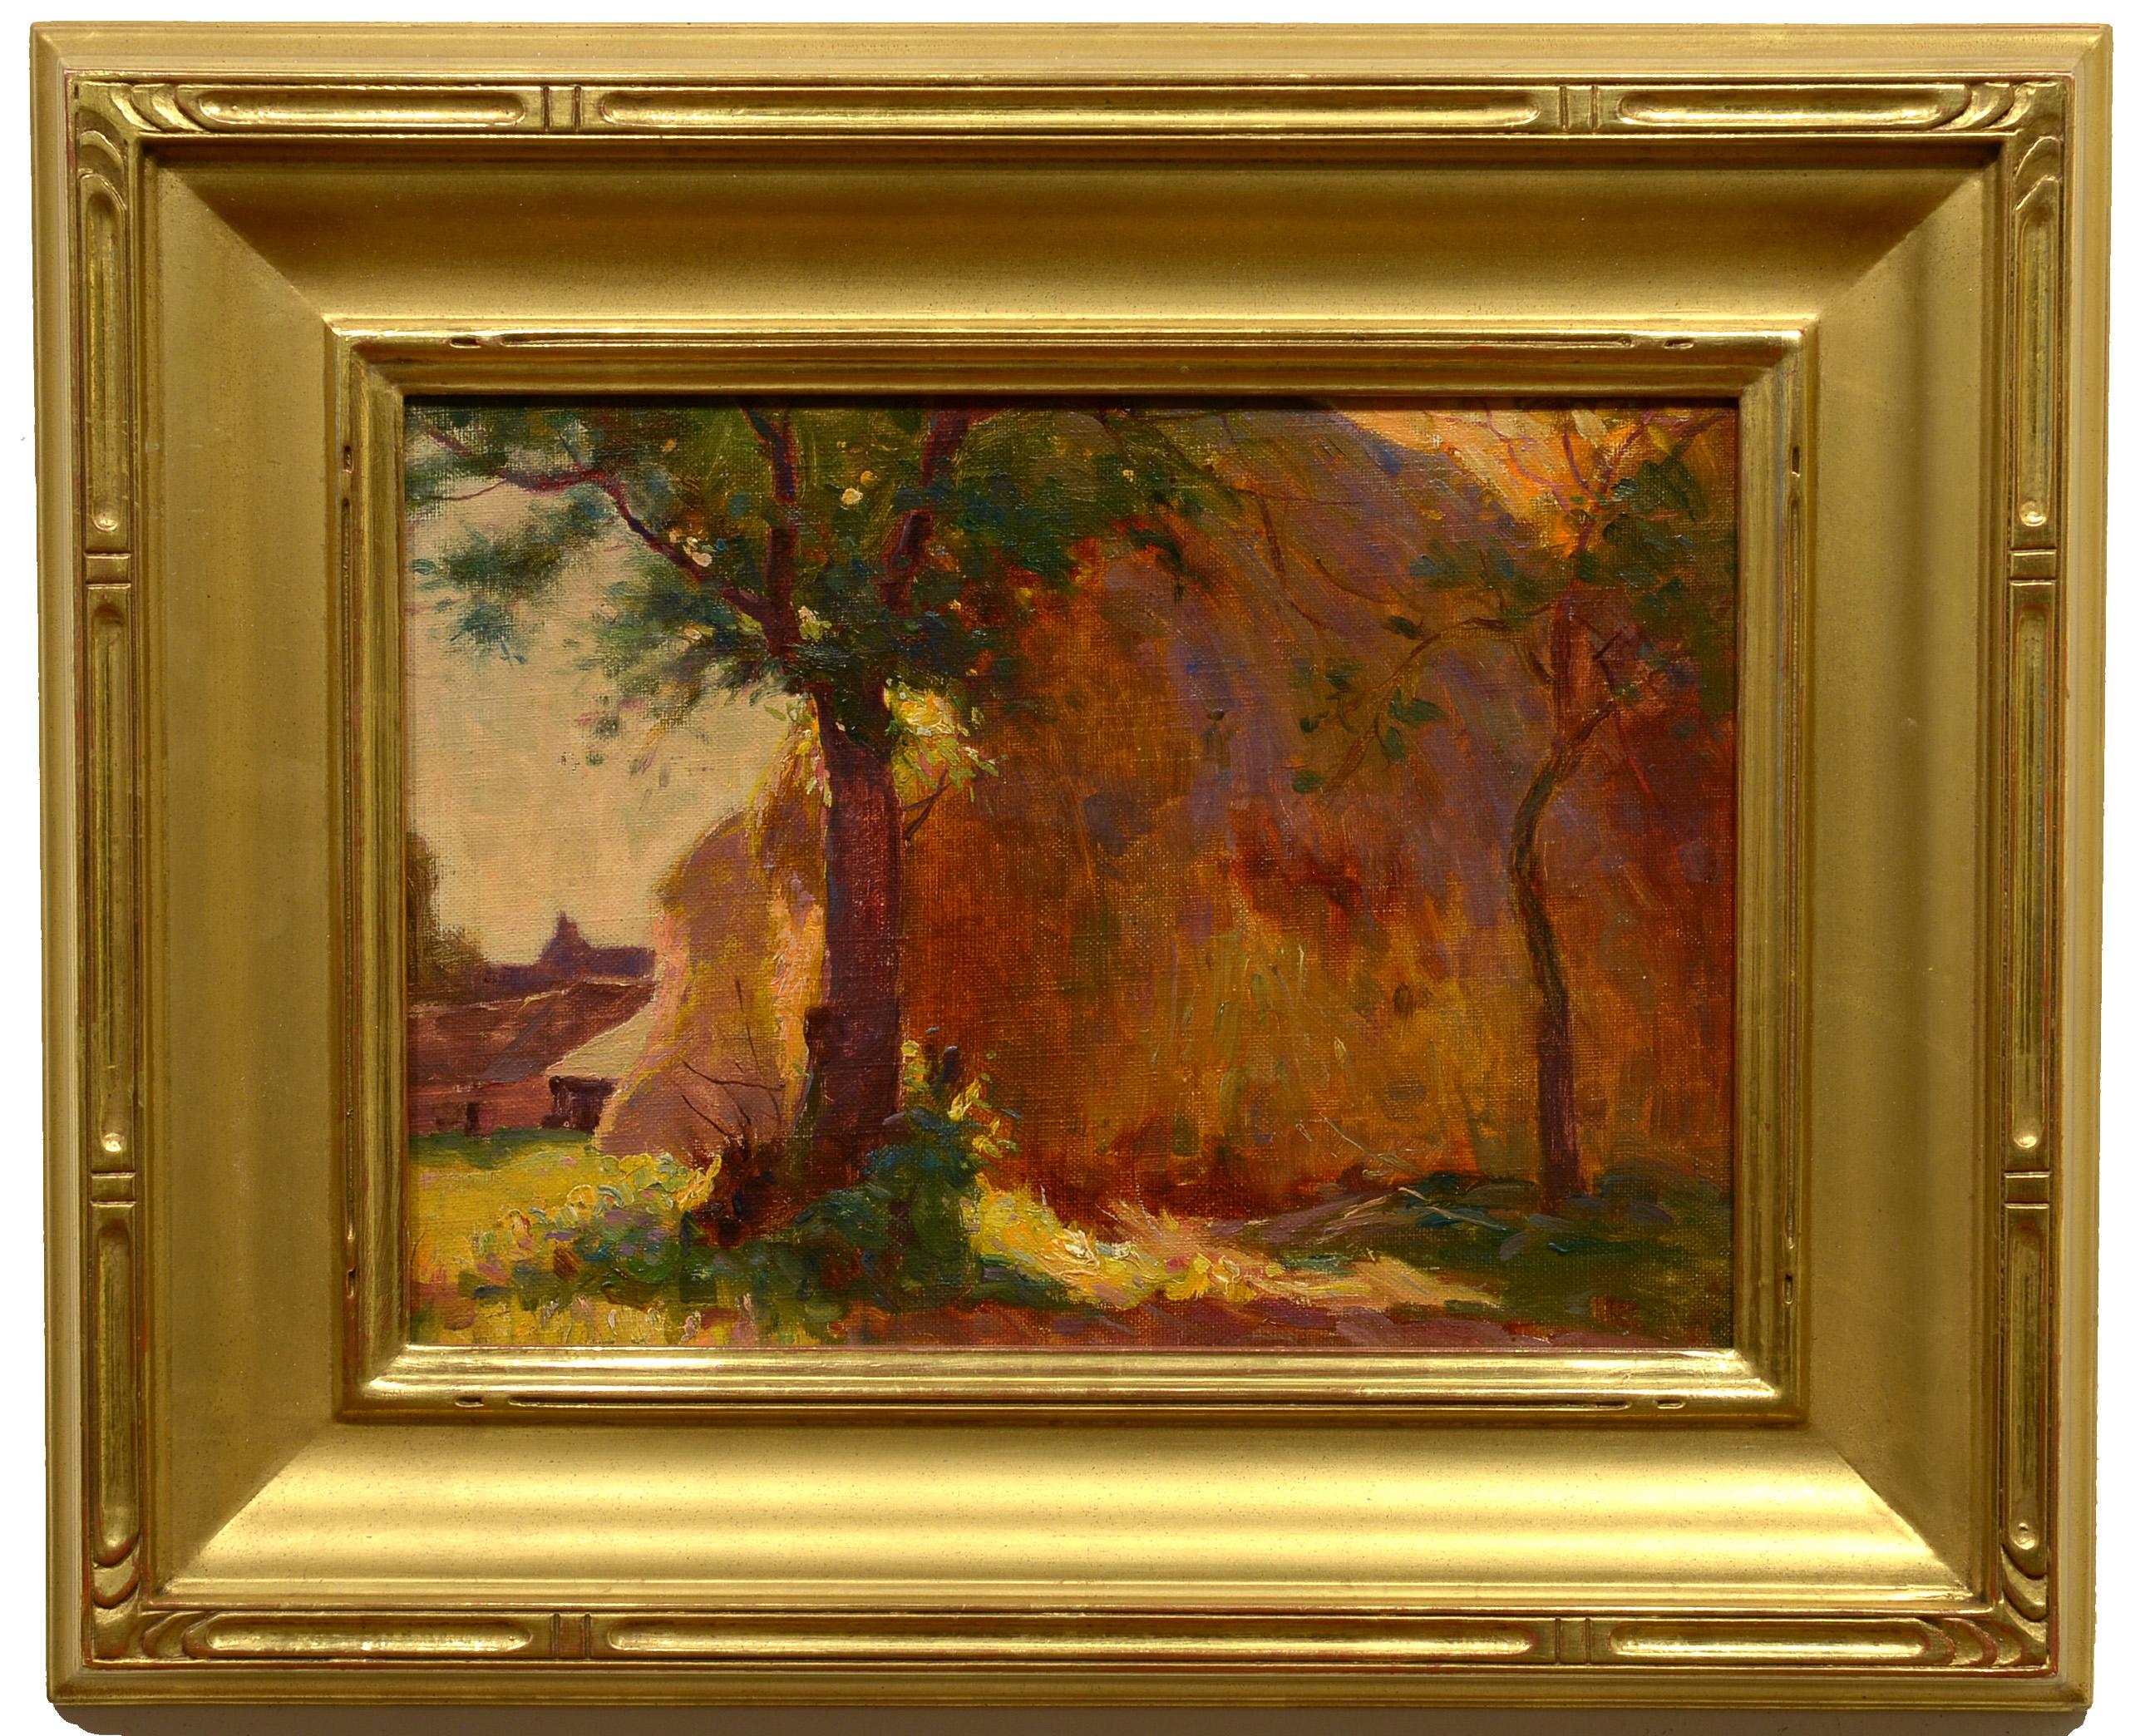 1900s landscape paintings